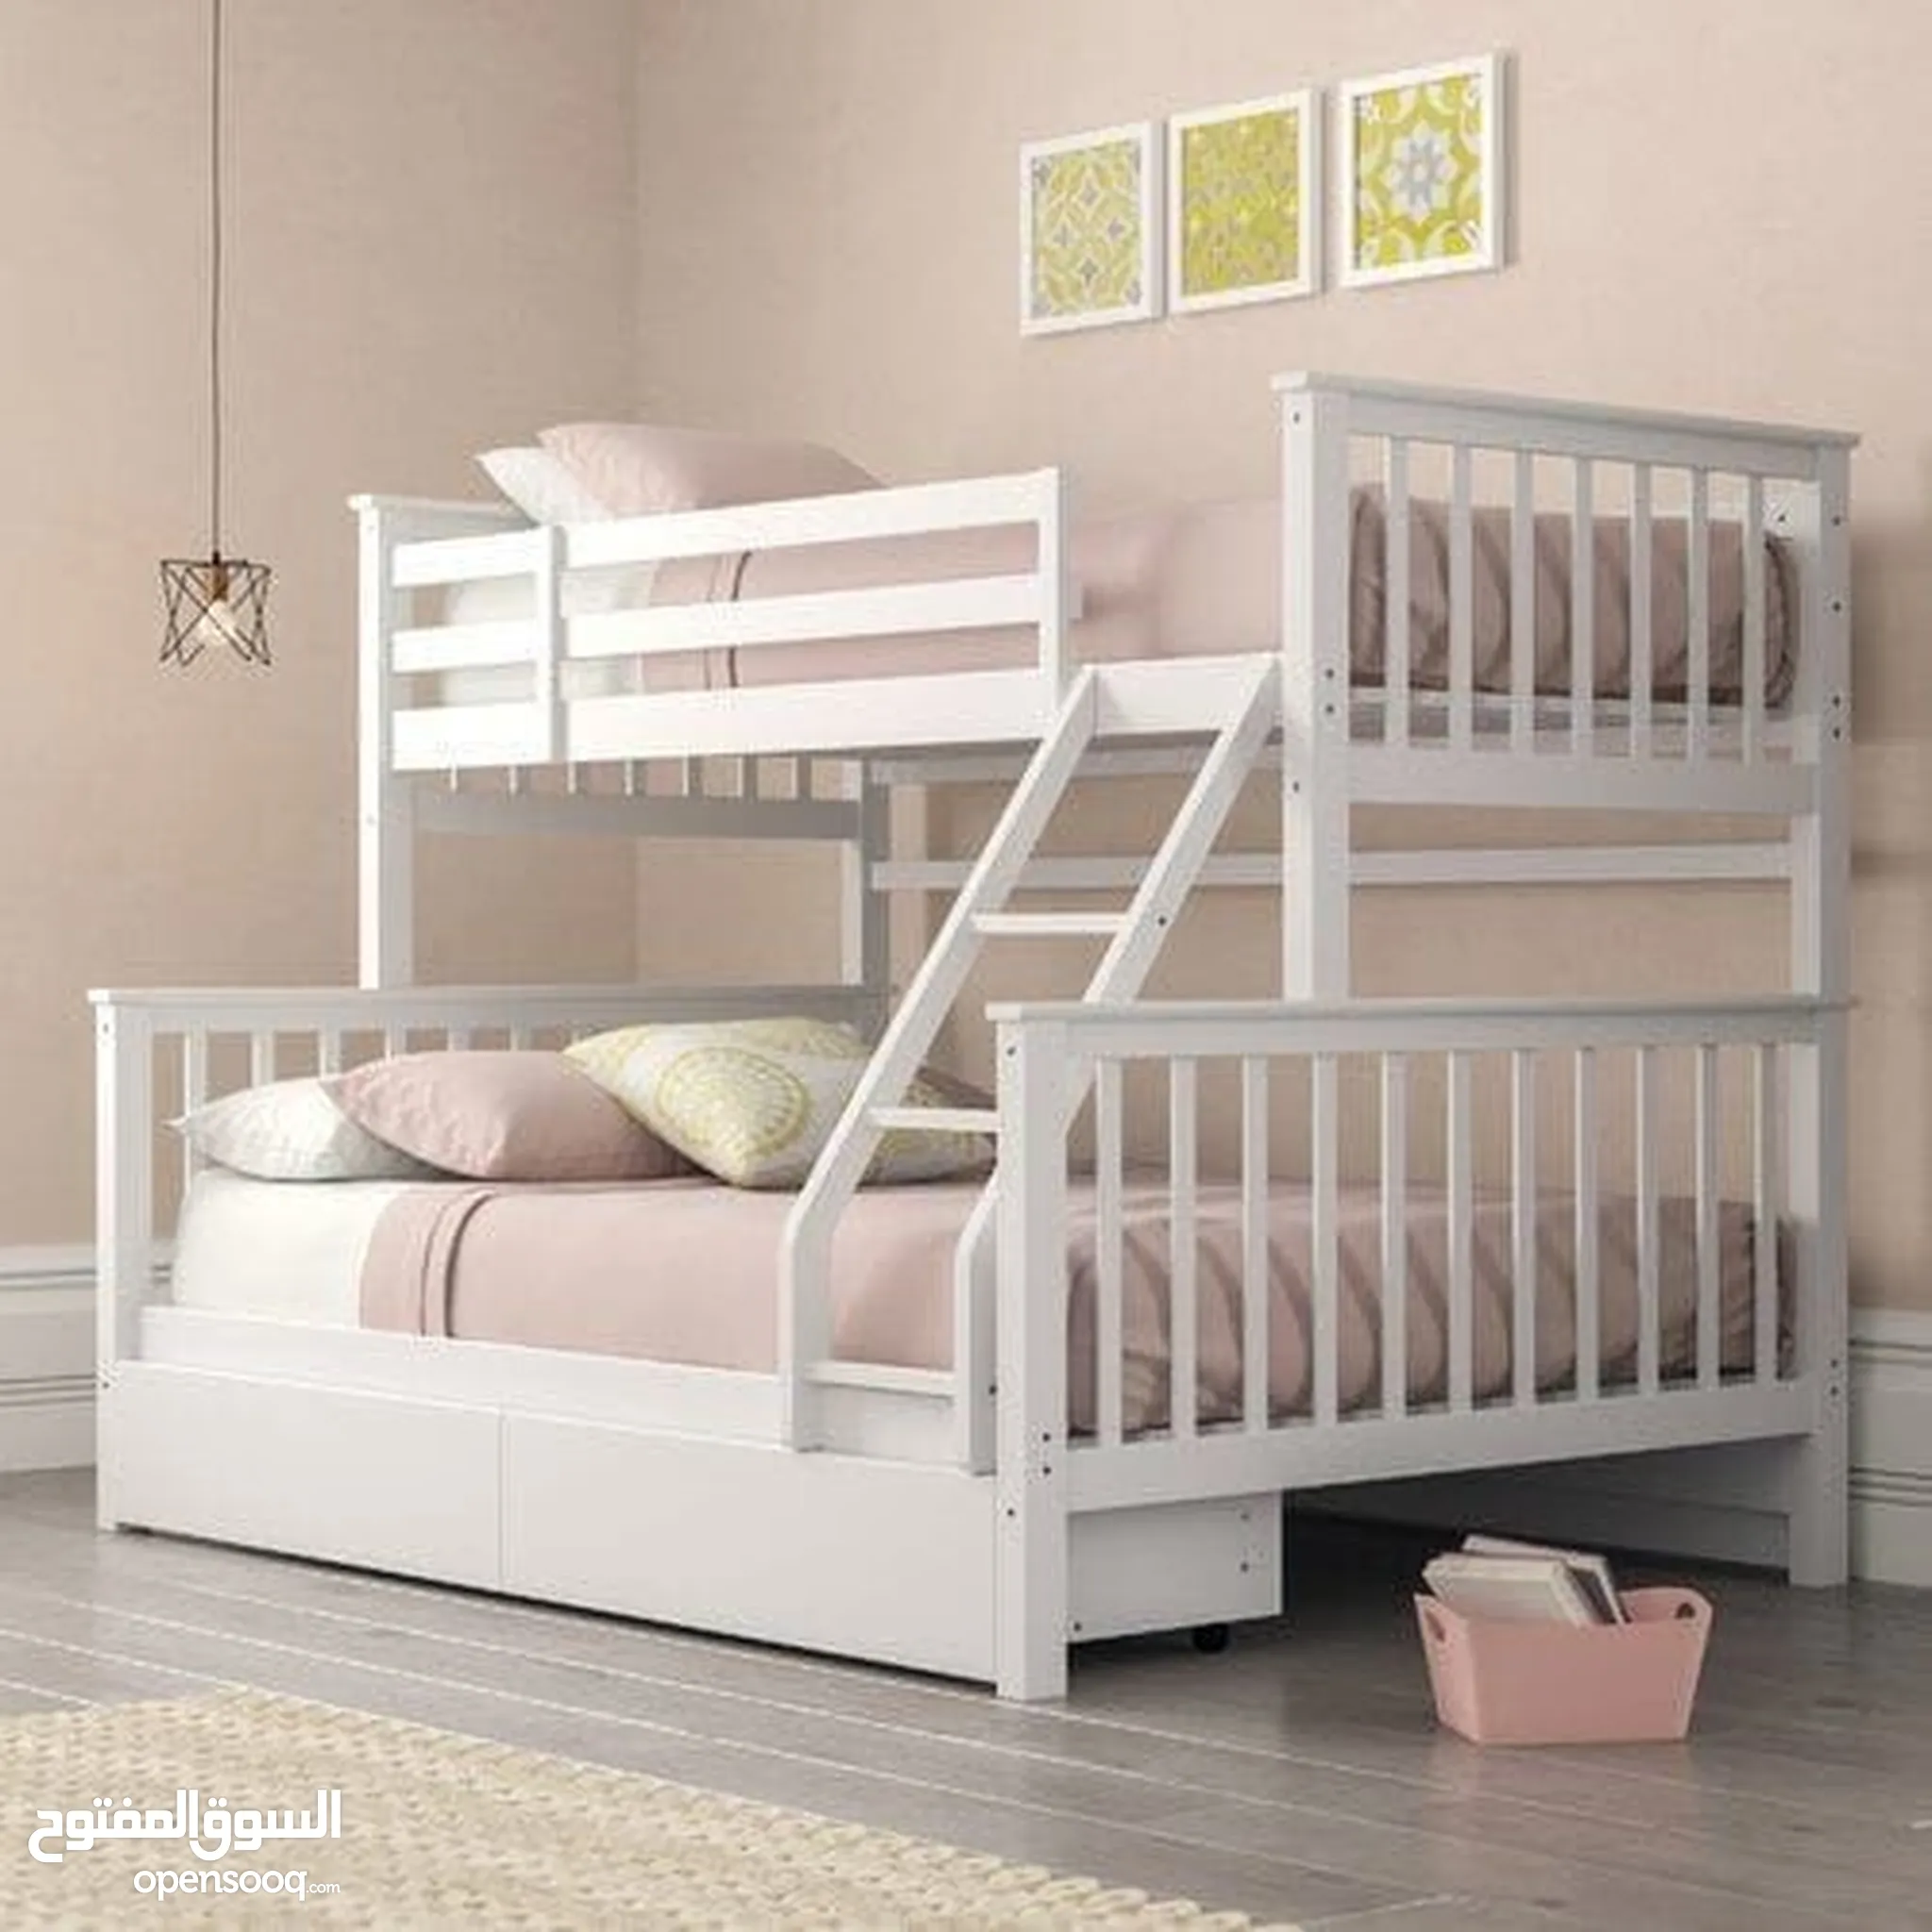 اثاث اطفال للبيع : غرف نوم اطفال : خزائن : تخت : سرير : أسعار : أبو ظبي | السوق  المفتوح